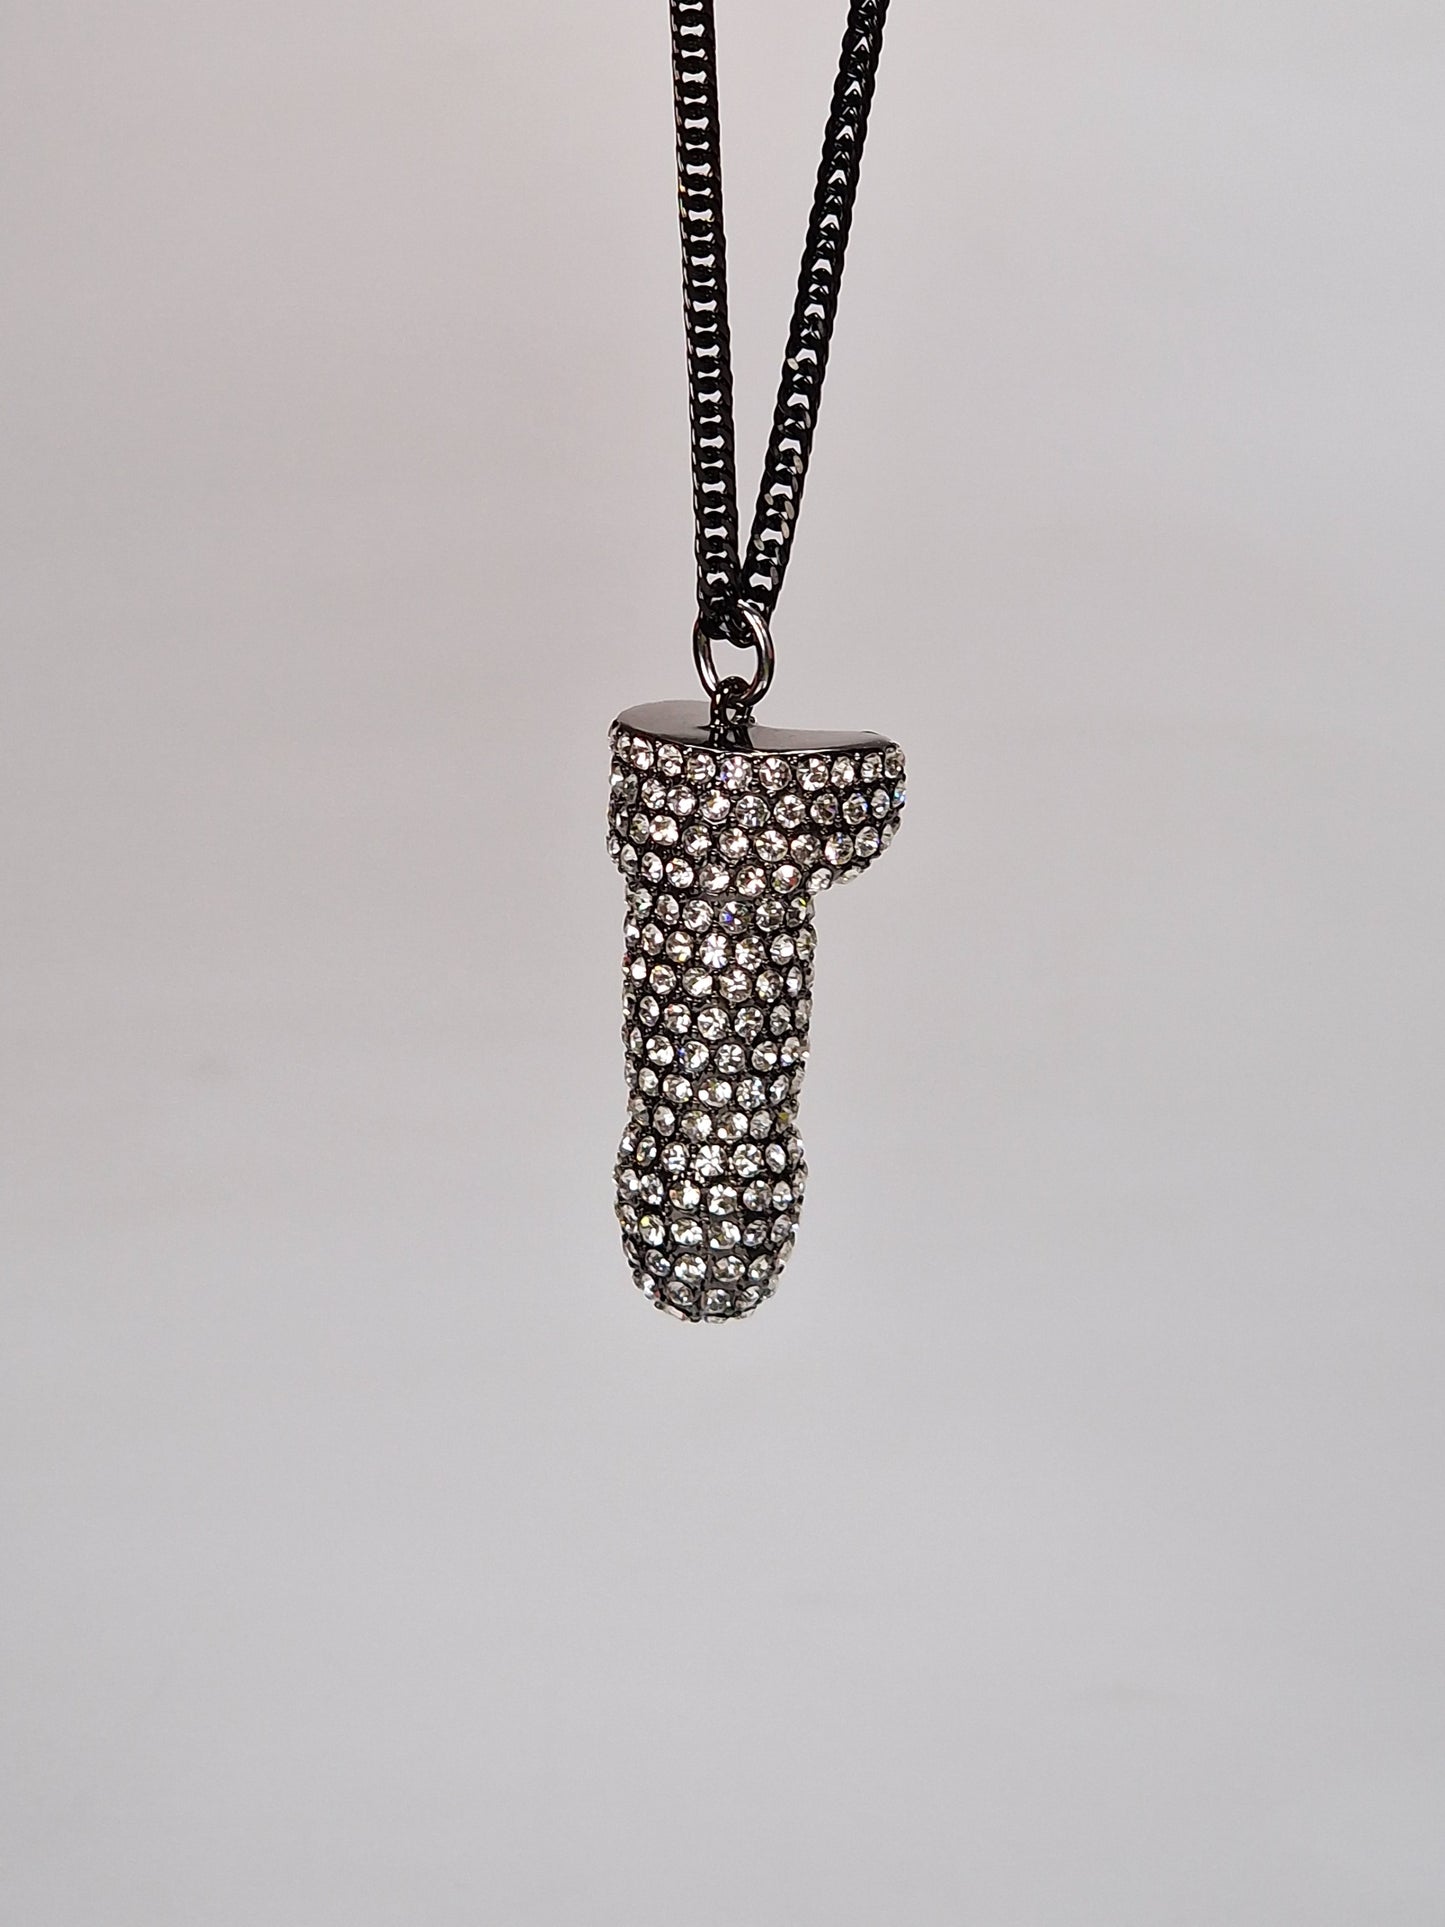 Svart metall med swarovski kristaller  - Halsband 5cm hängsmycke